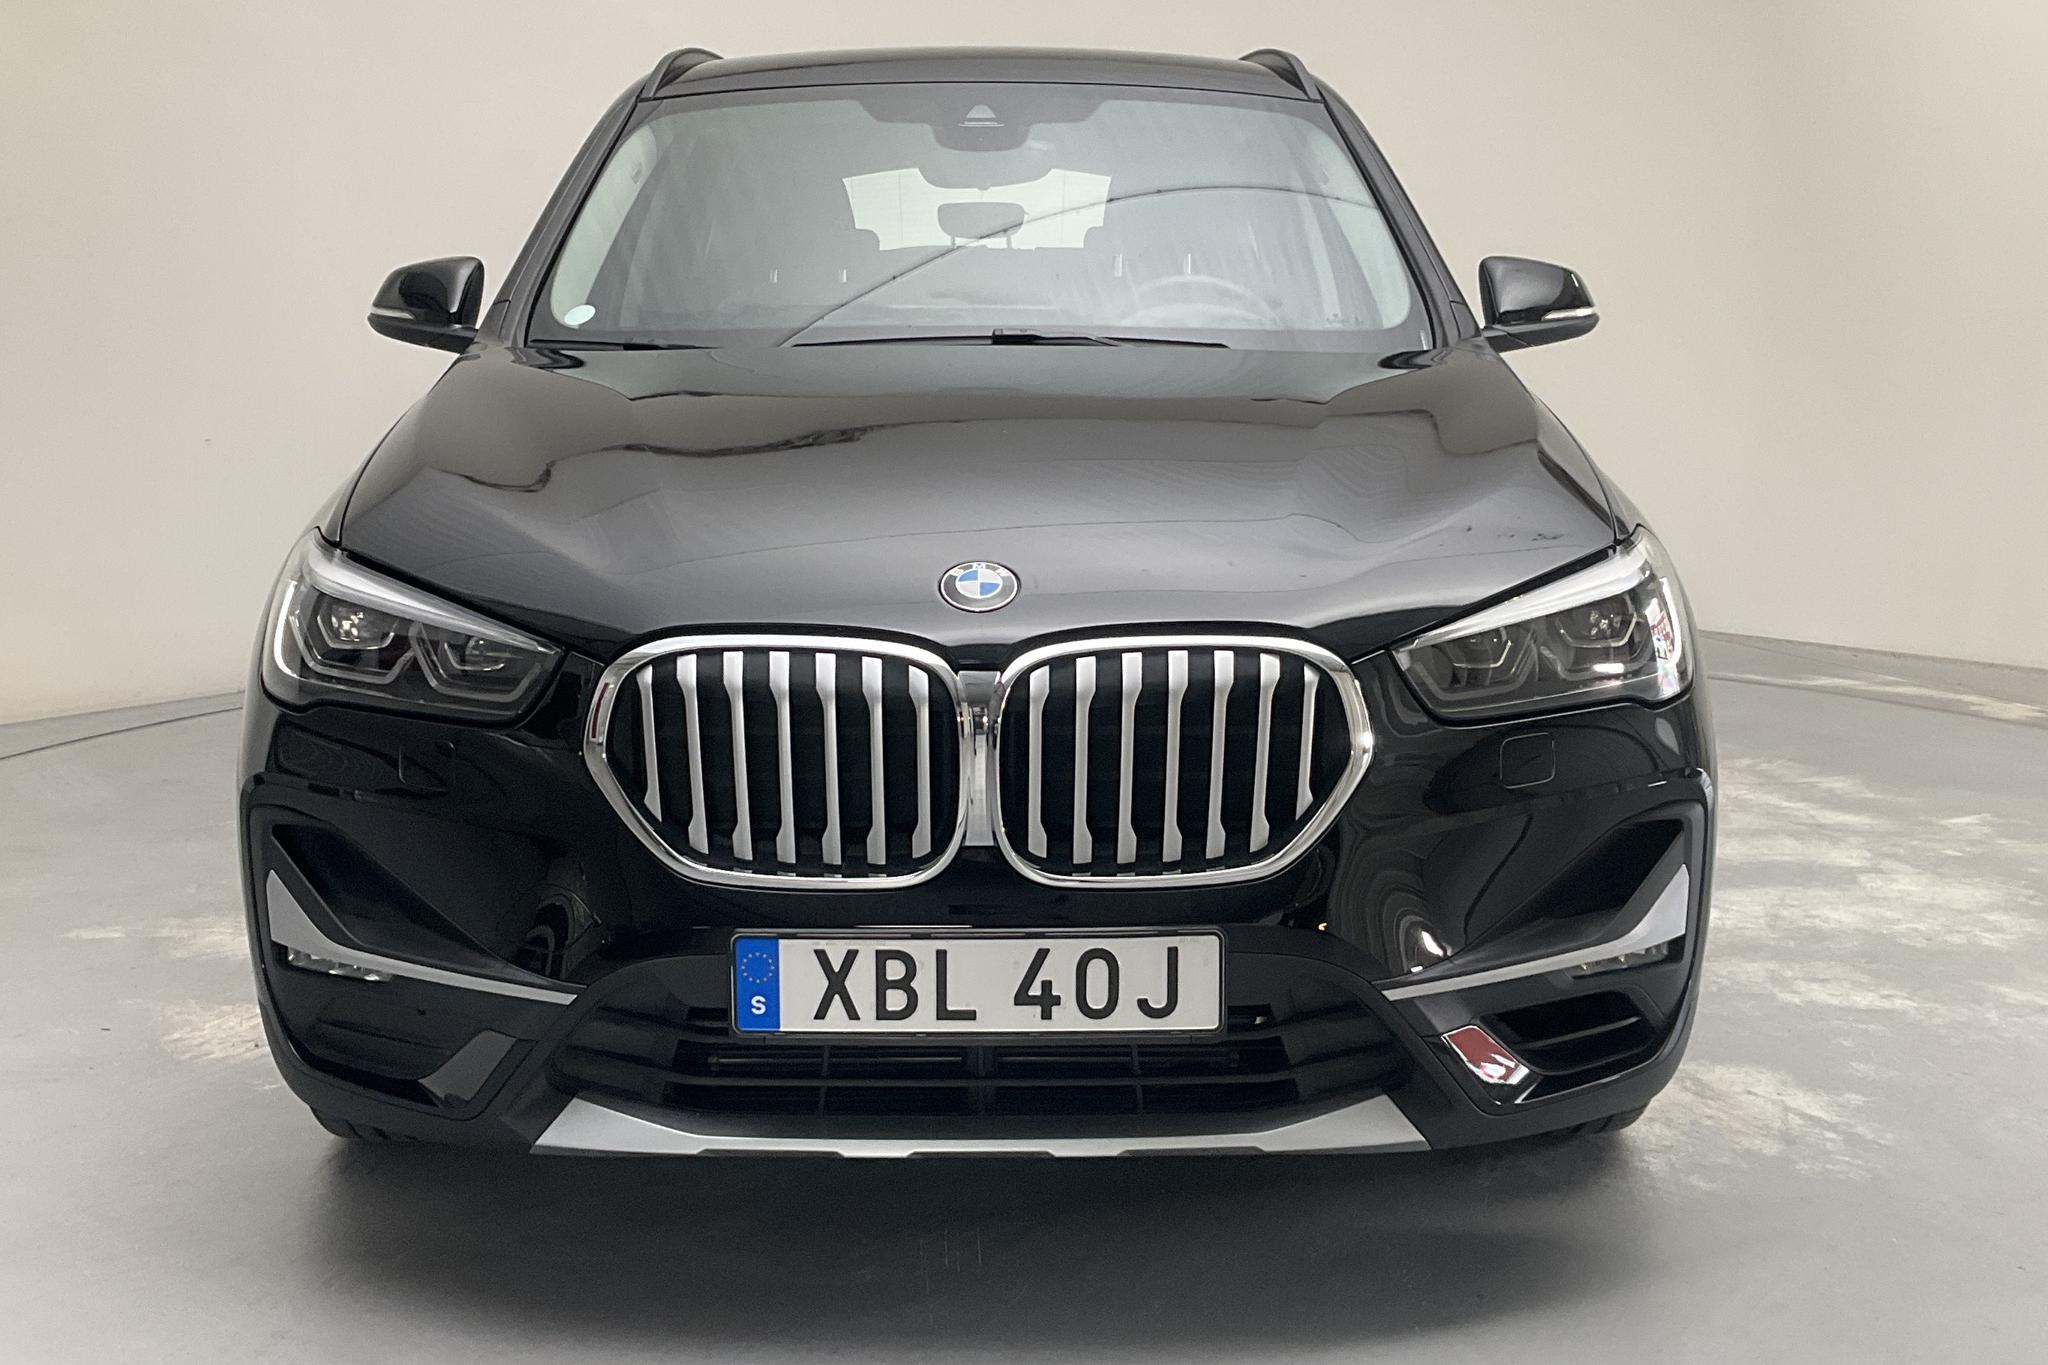 BMW X1 xDrive25e 9,7 kWh LCI, F48 (220hk) - 21 770 km - Automatic - black - 2021